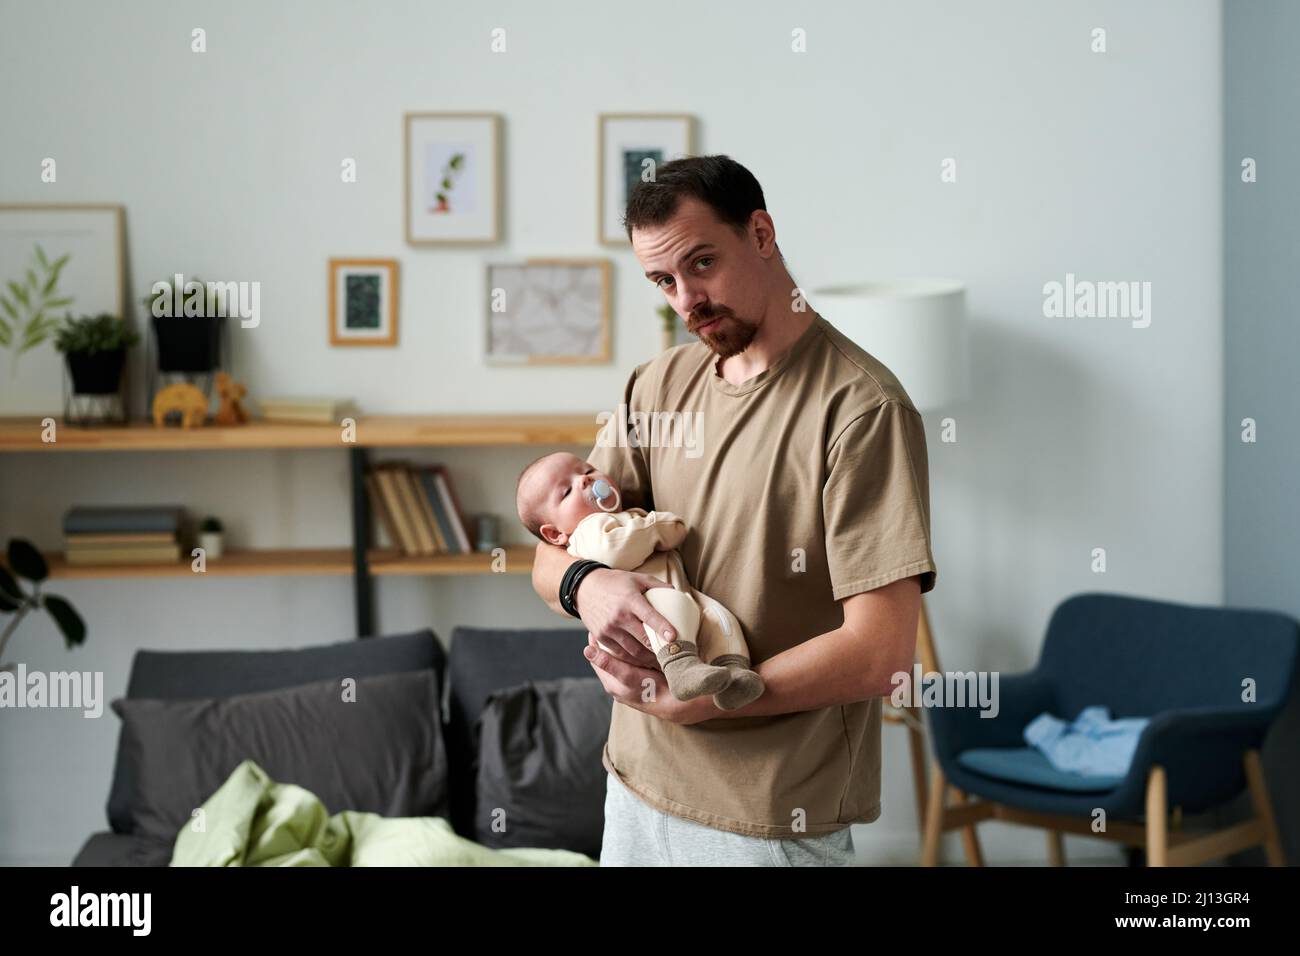 Giovane uomo contemporaneo lulling bambino figlio mentre in piedi di fronte alla macchina fotografica contro scaffali, immagini in cornici, poltrona e letto Foto Stock